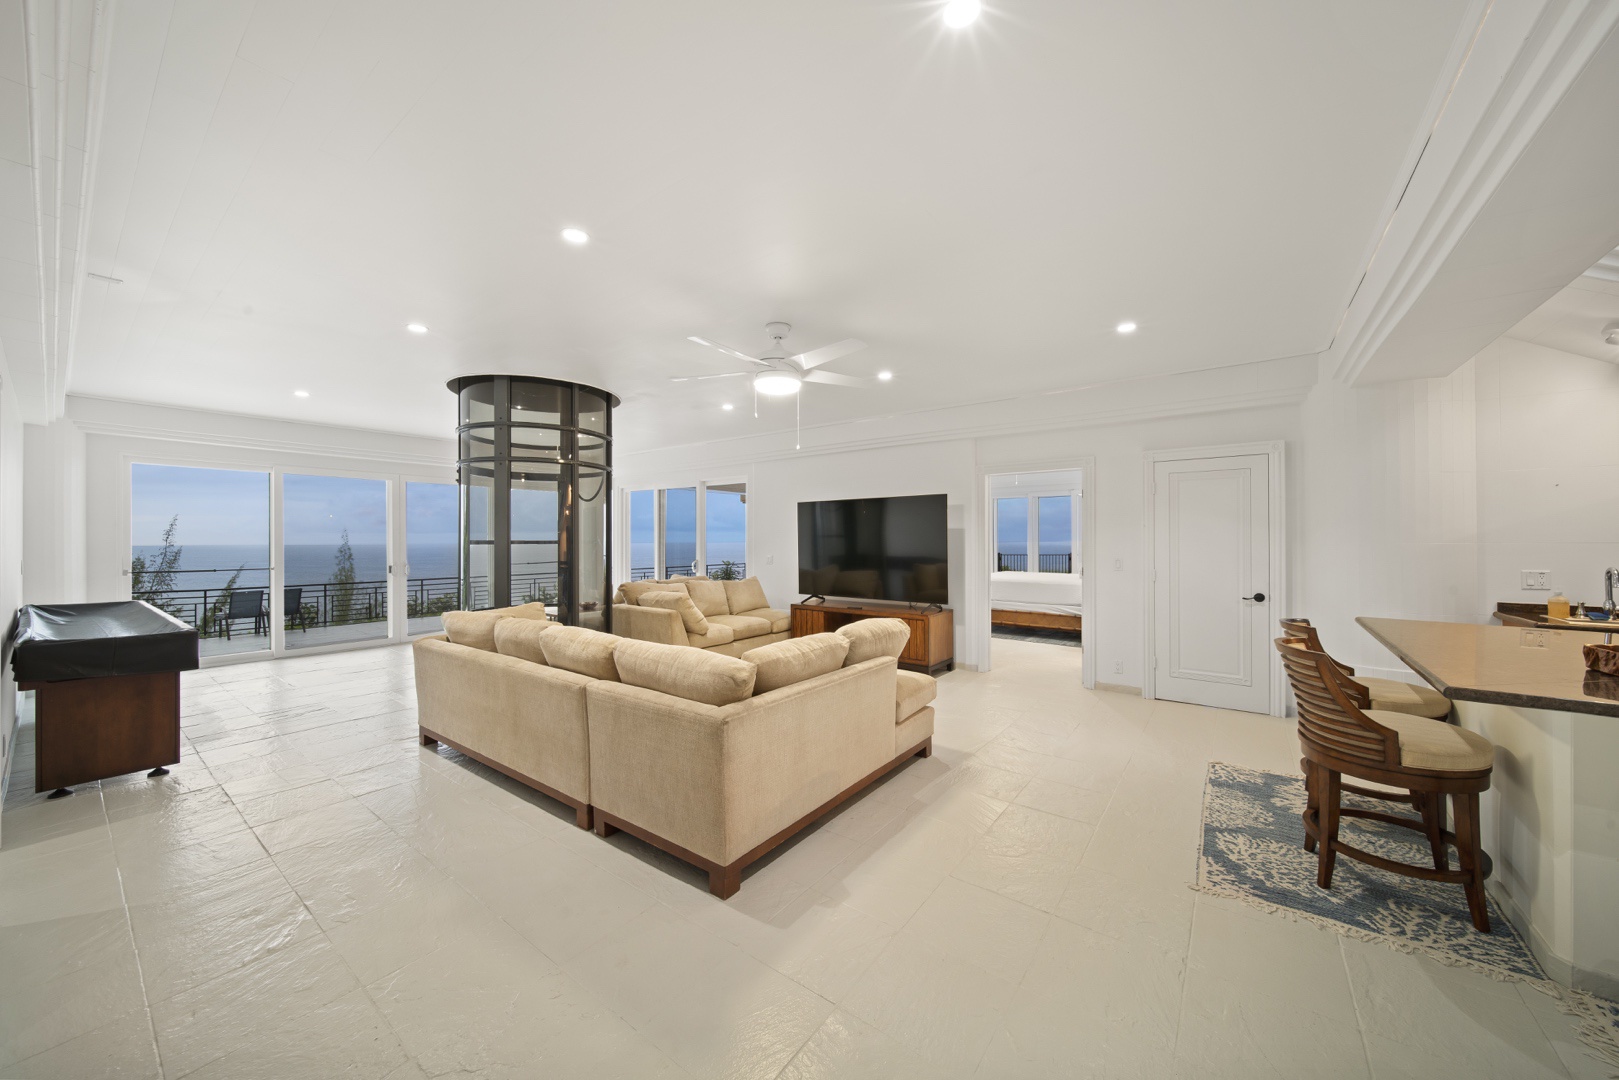 Ninole Vacation Rentals, Waterfalling Estate - First floor great room with wraparound deck, ocean views & kitchenette.